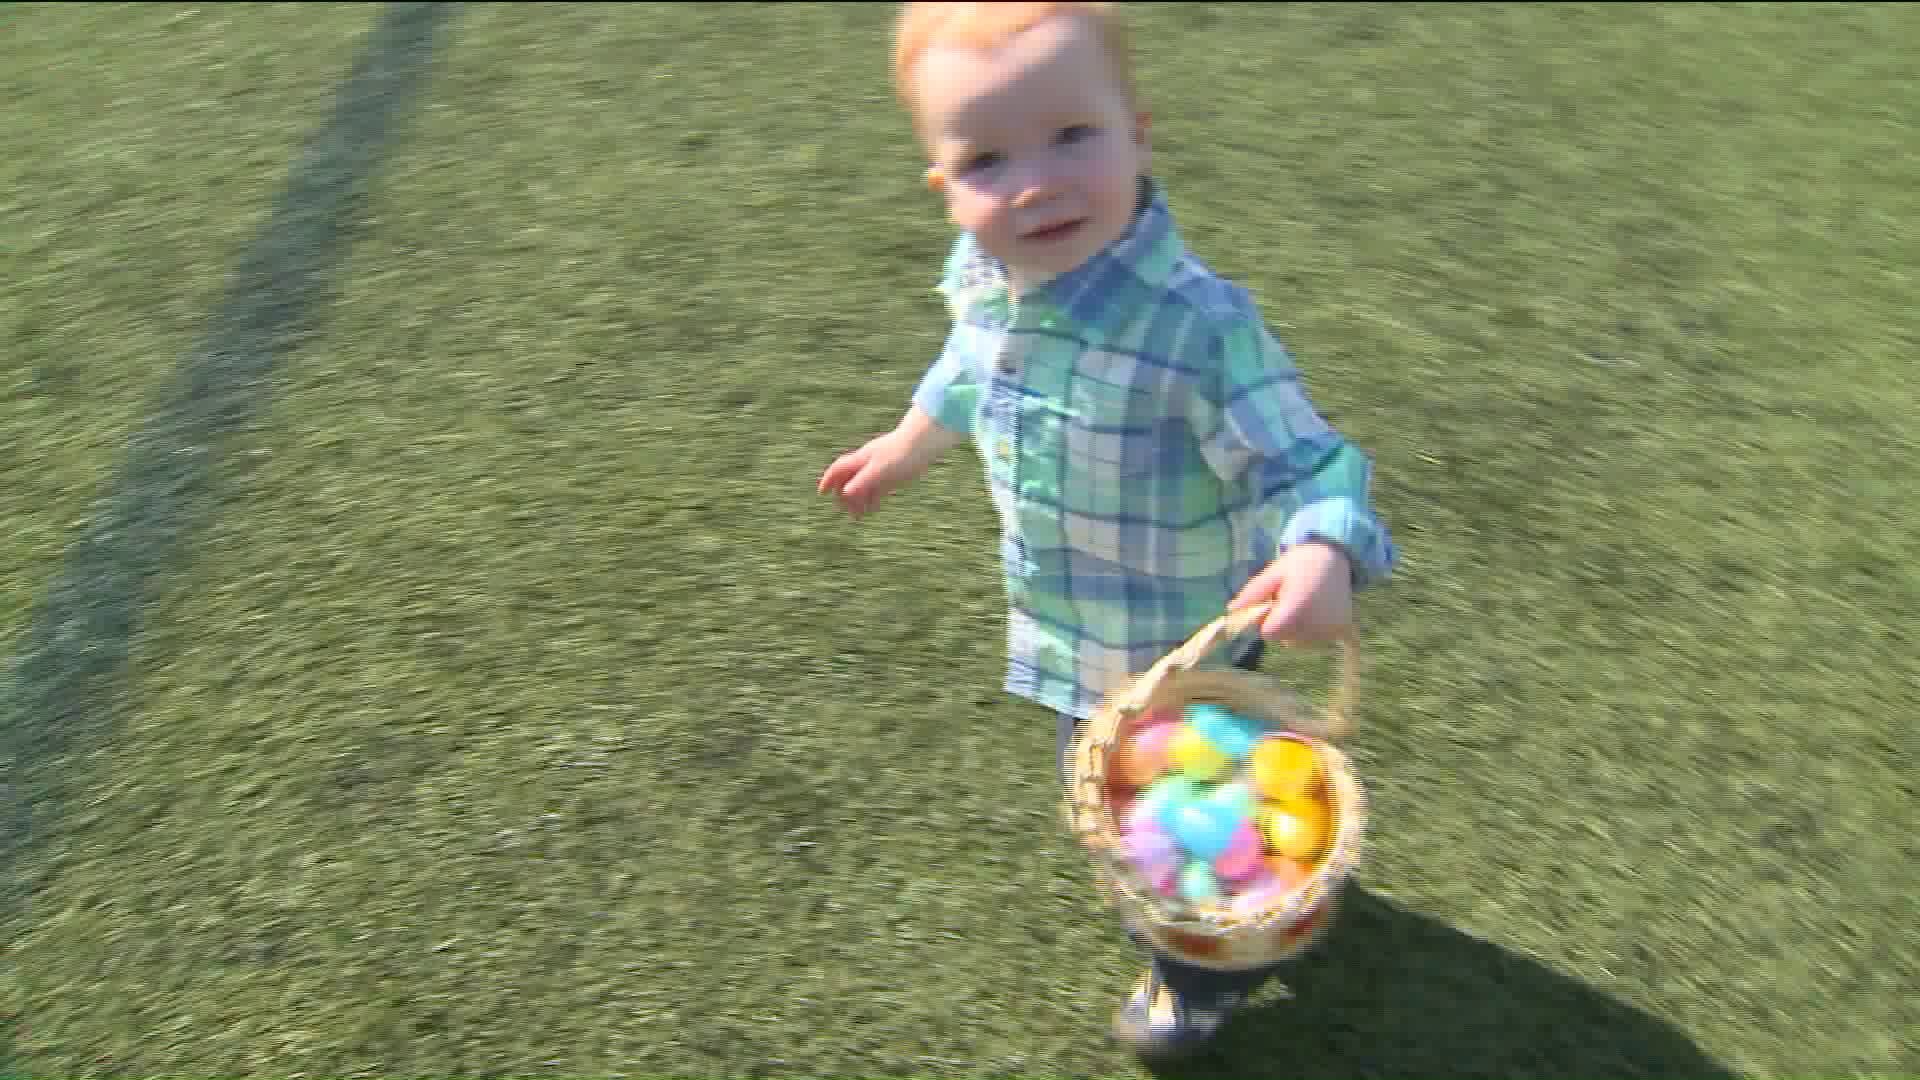 Kids turn out for Easter Egg hunt in West Hartford